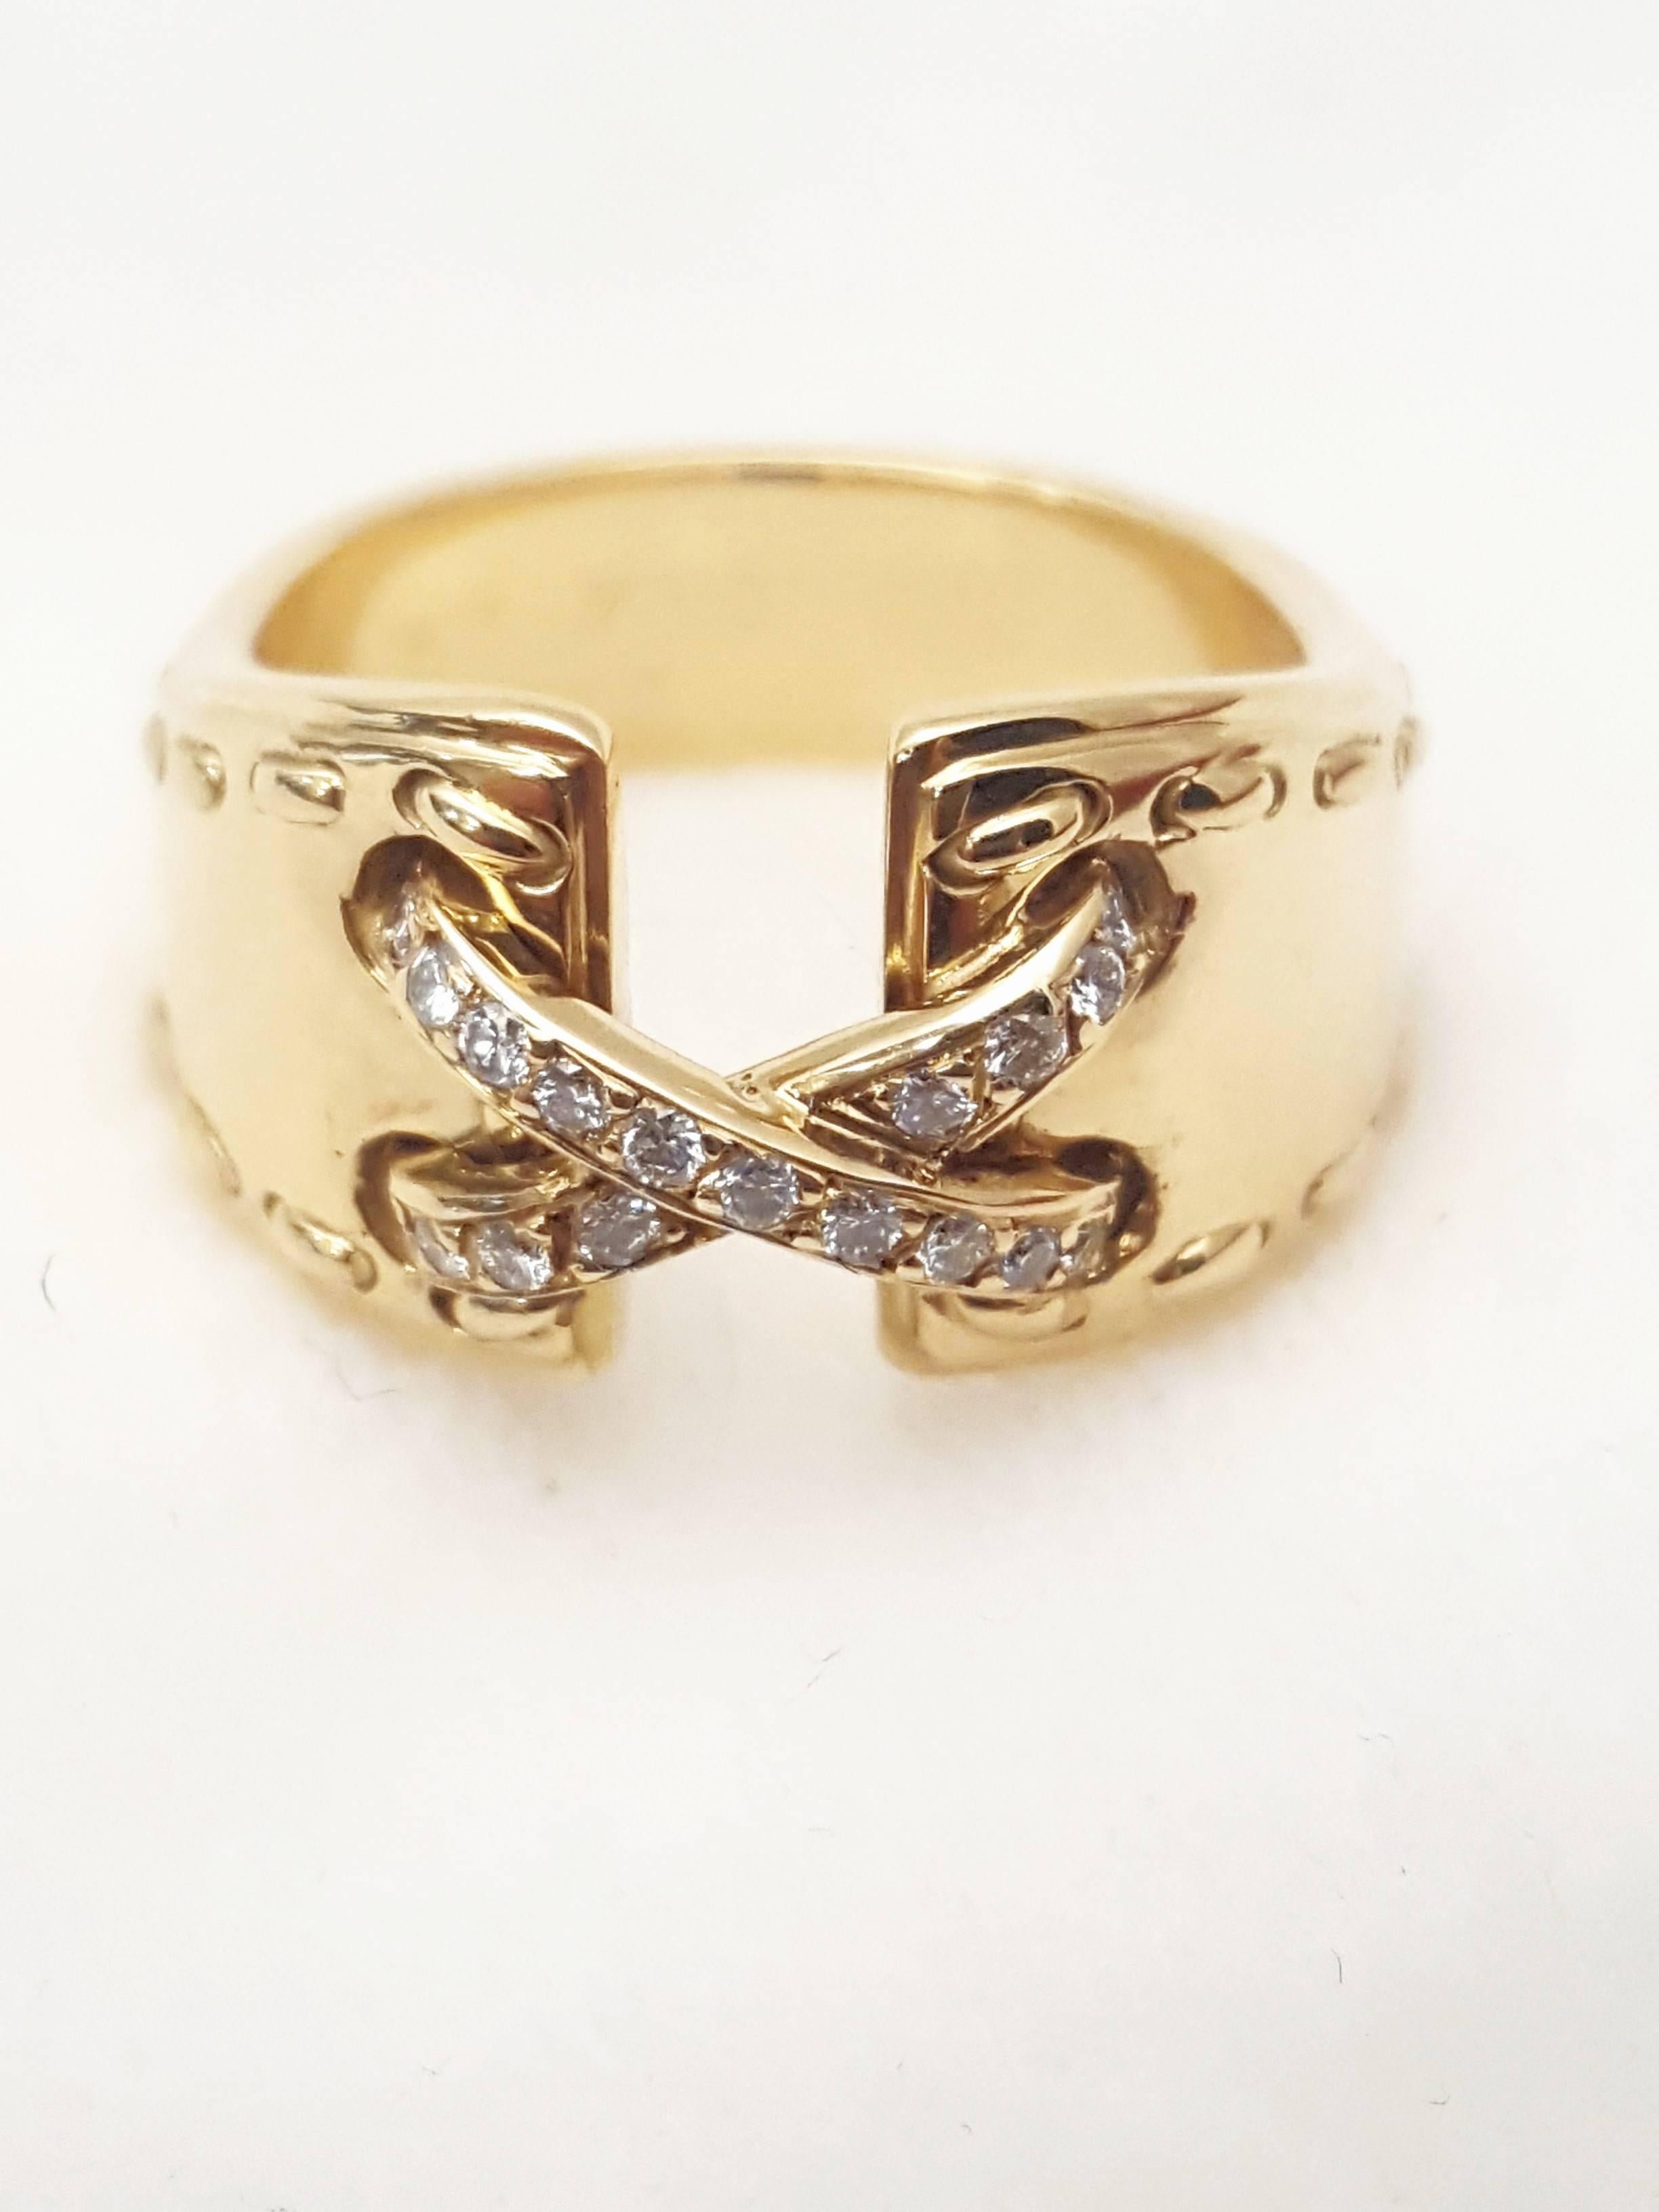 Heritable Hermes 18 Karat Diamond Ring For Sale 3